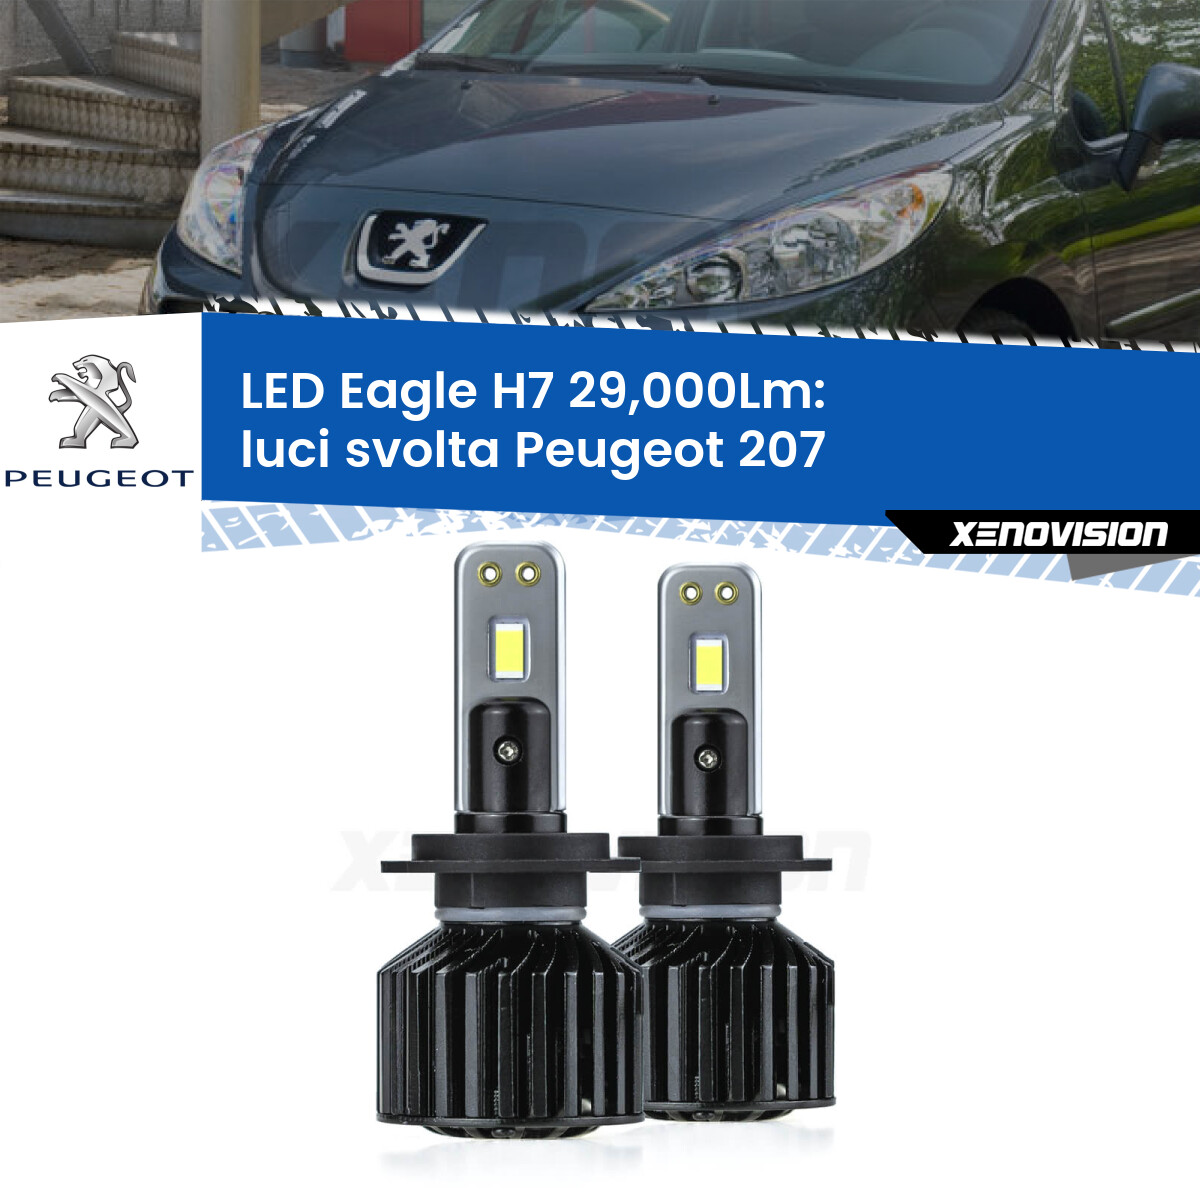 Luci svolta LED H7 29,000Lm per Peugeot 207 con luci svolta